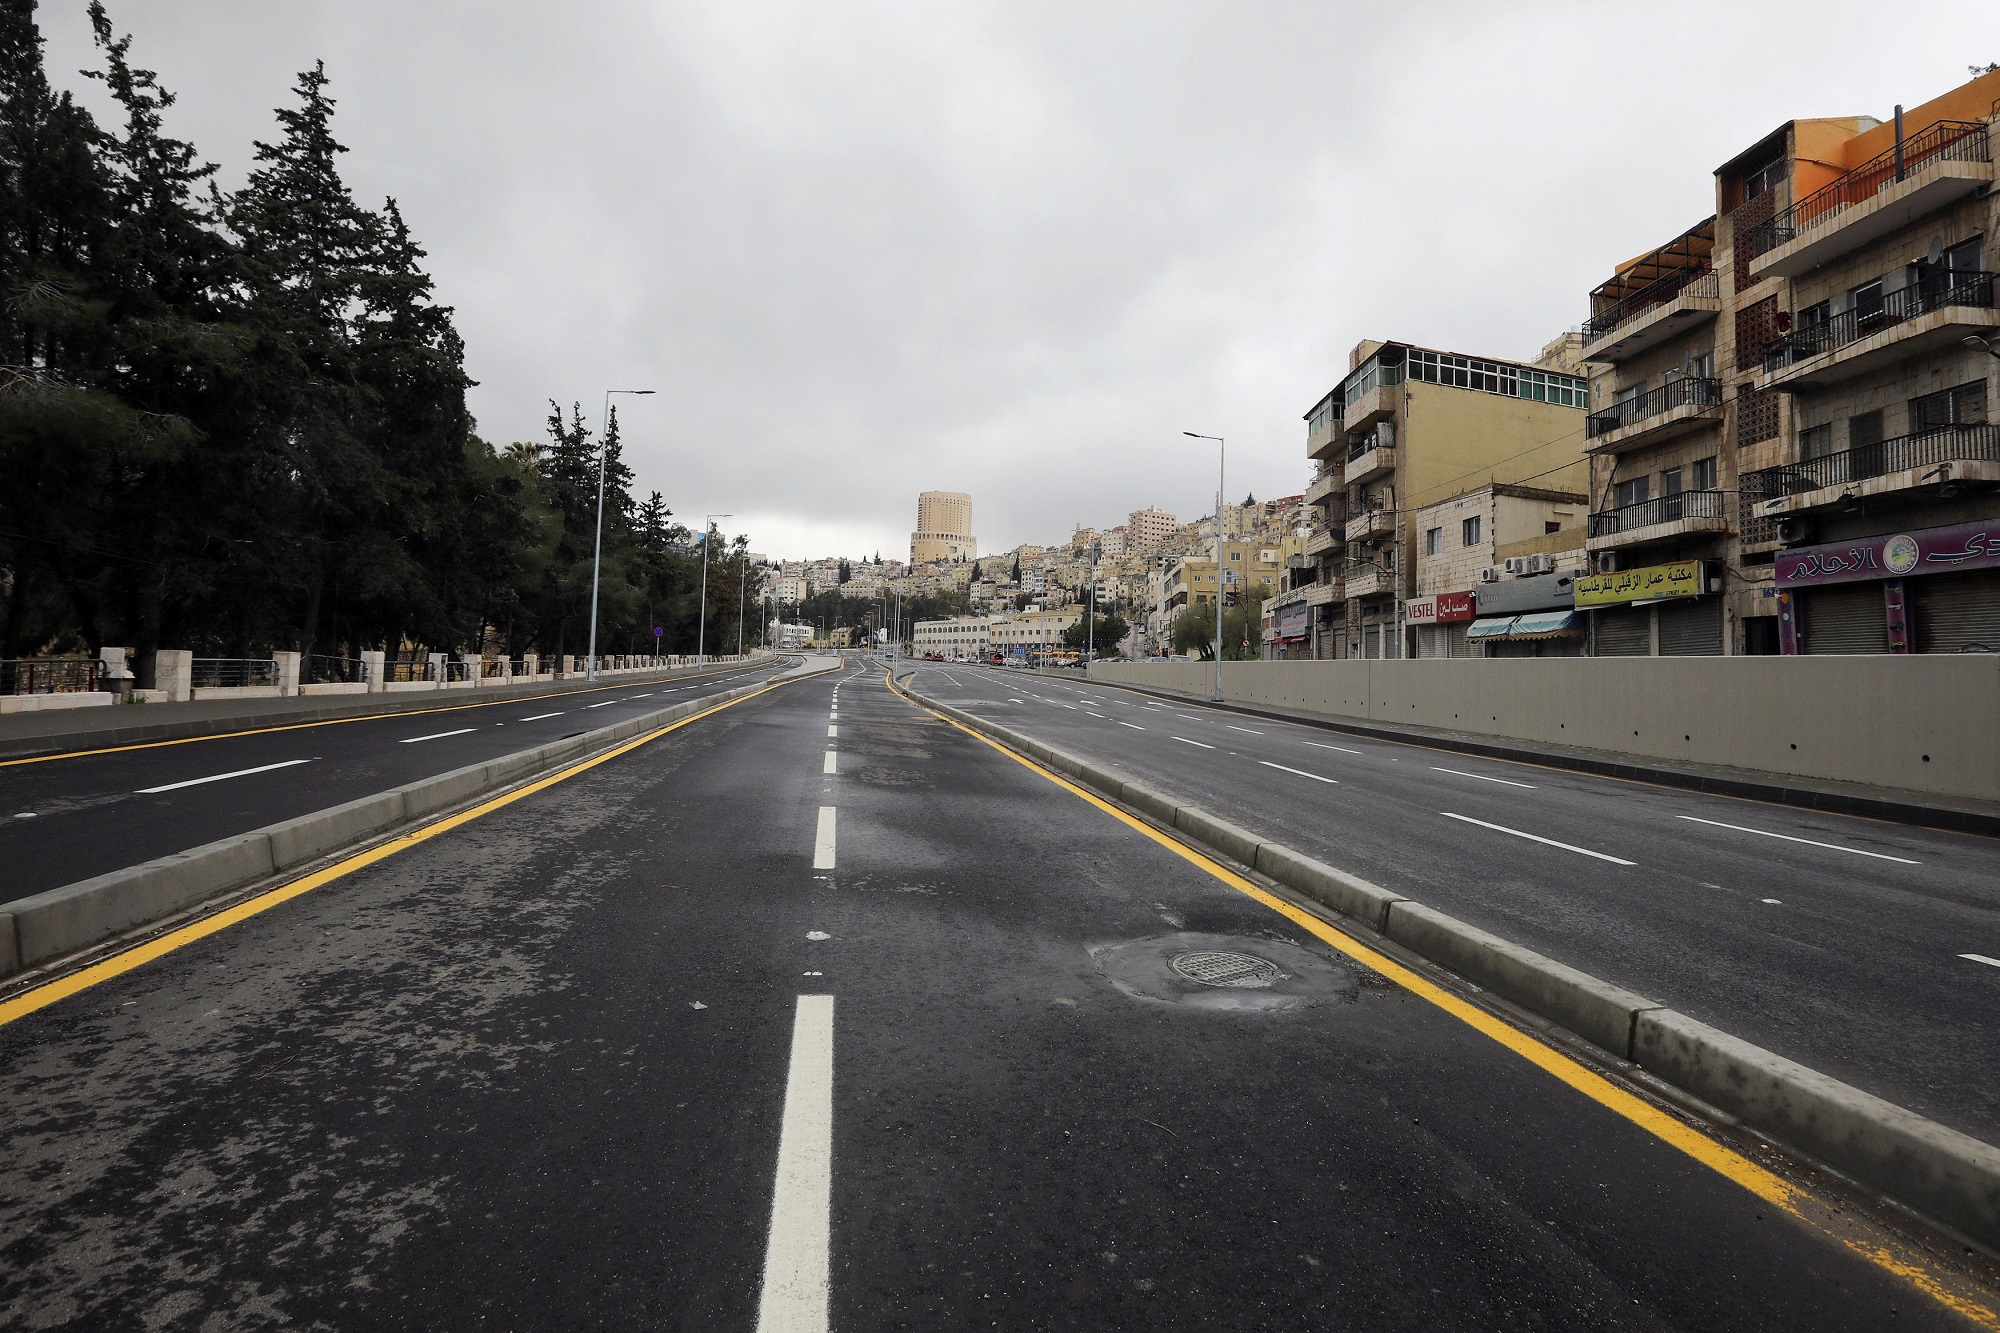 شارع يخلو من الحركة تماما في مدينة عمّان، في ظل سريان حظر التجول؛ للحد من انتشار فيروس كورونا المستجد، 21 آذار/مارس 2020. (محمد حامد/ رويترز)